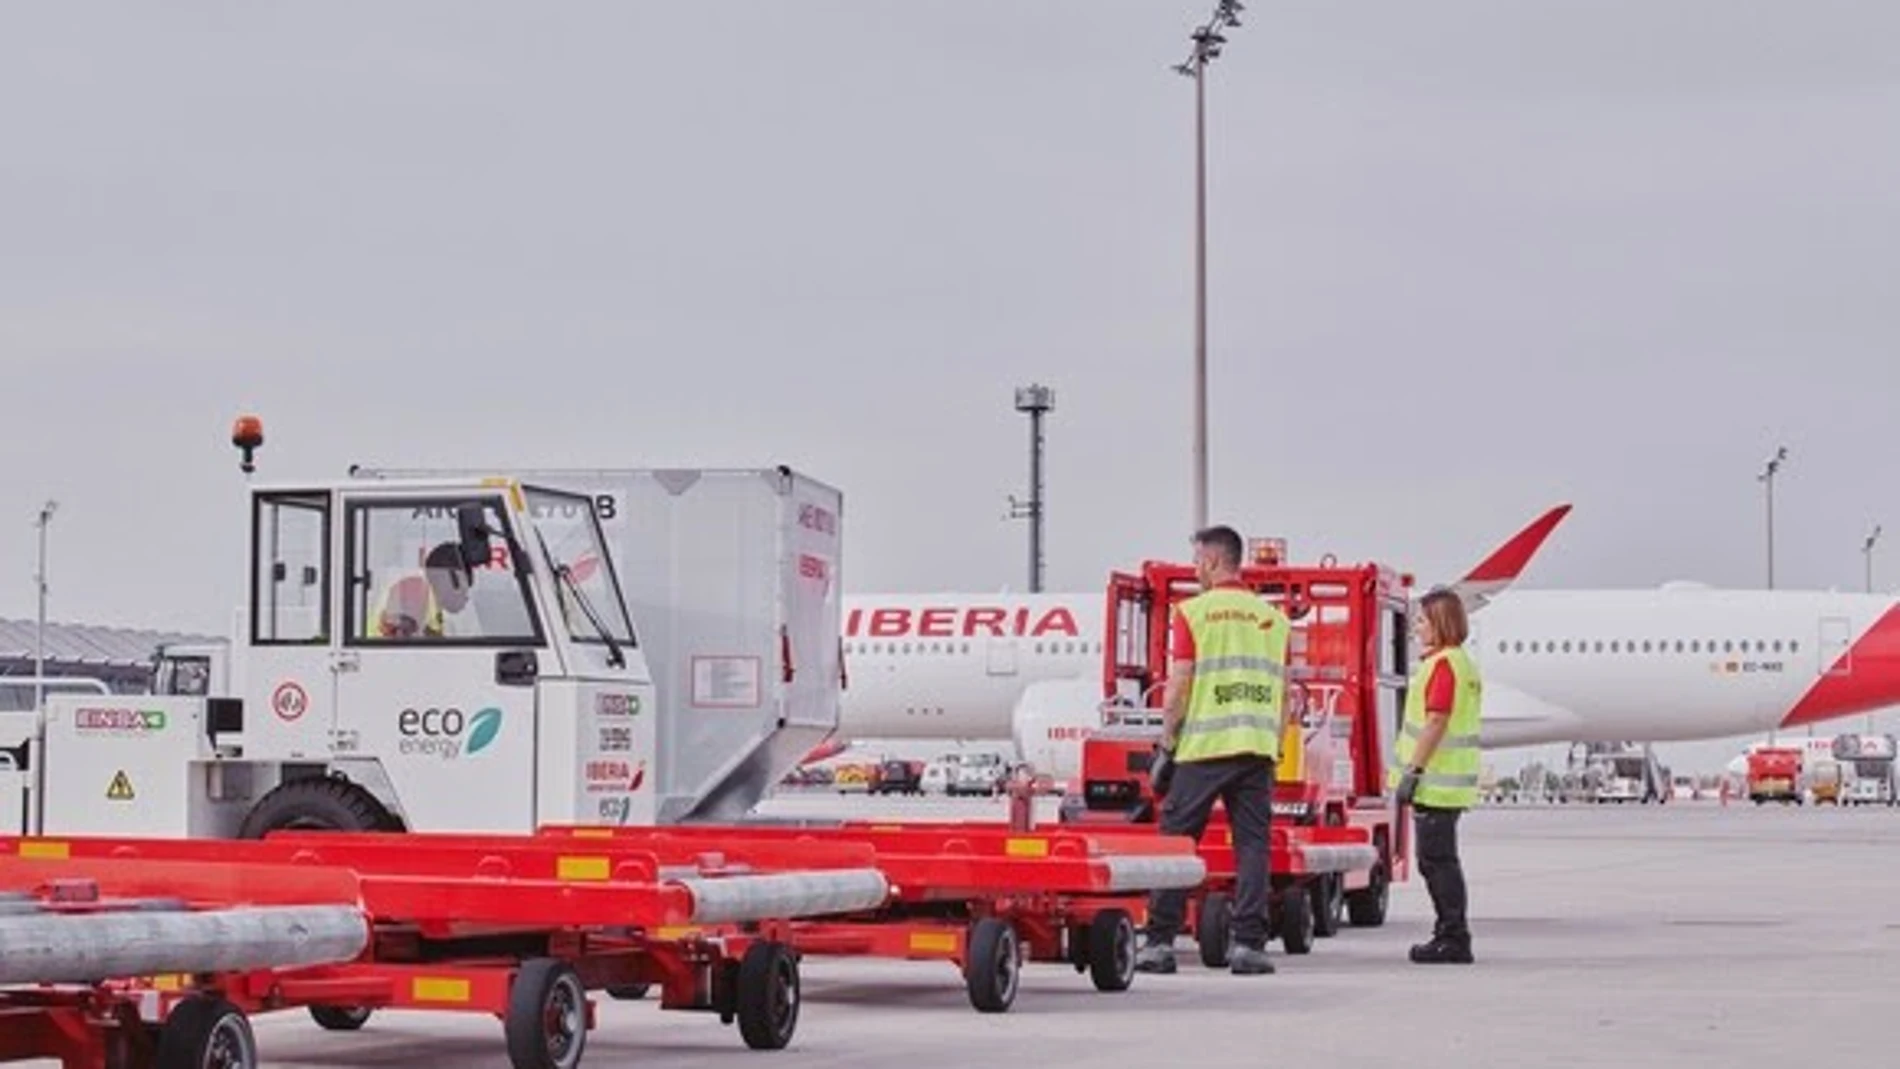 MADRID.-Iberia impugna el resultado del concurso de handling de Aena al considerar que hay "irregularidades"